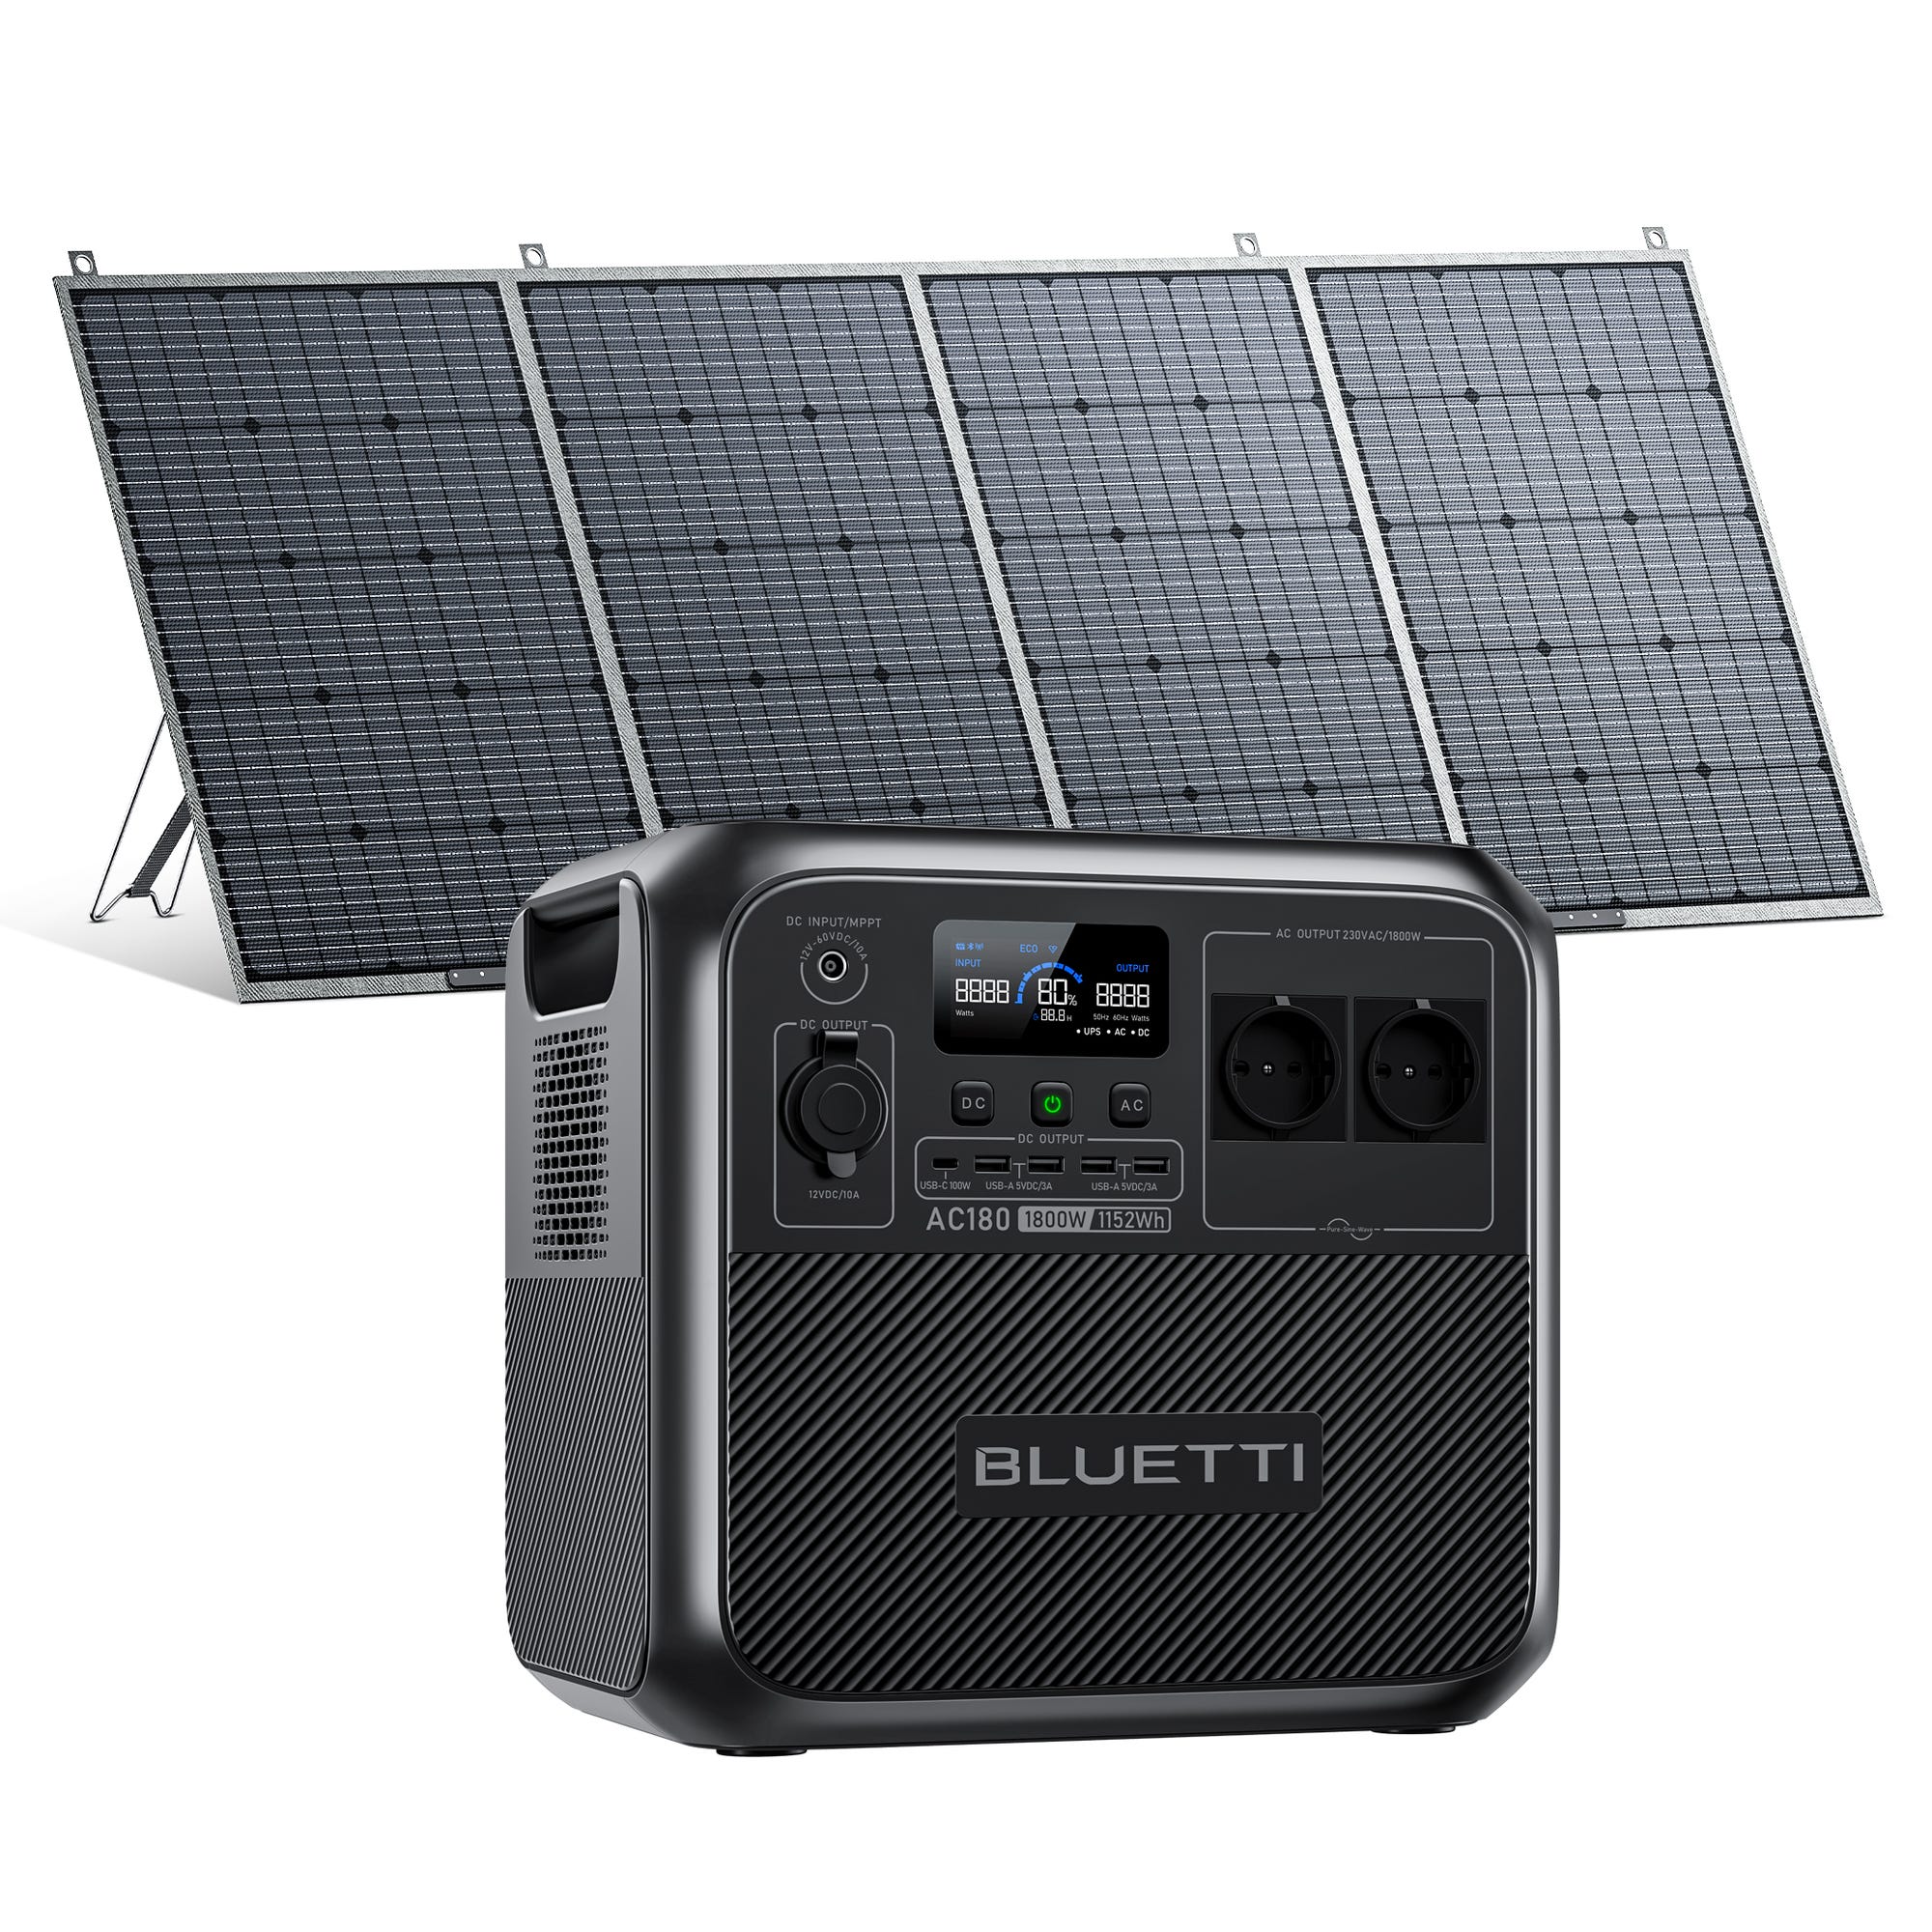 Générateur Électrique Solaire BLUETTI AC180 avec Panneau Solaire PV420,1152Wh Batterie LiFePO4, Station Électrique Portable pour Camping,Voyage 0